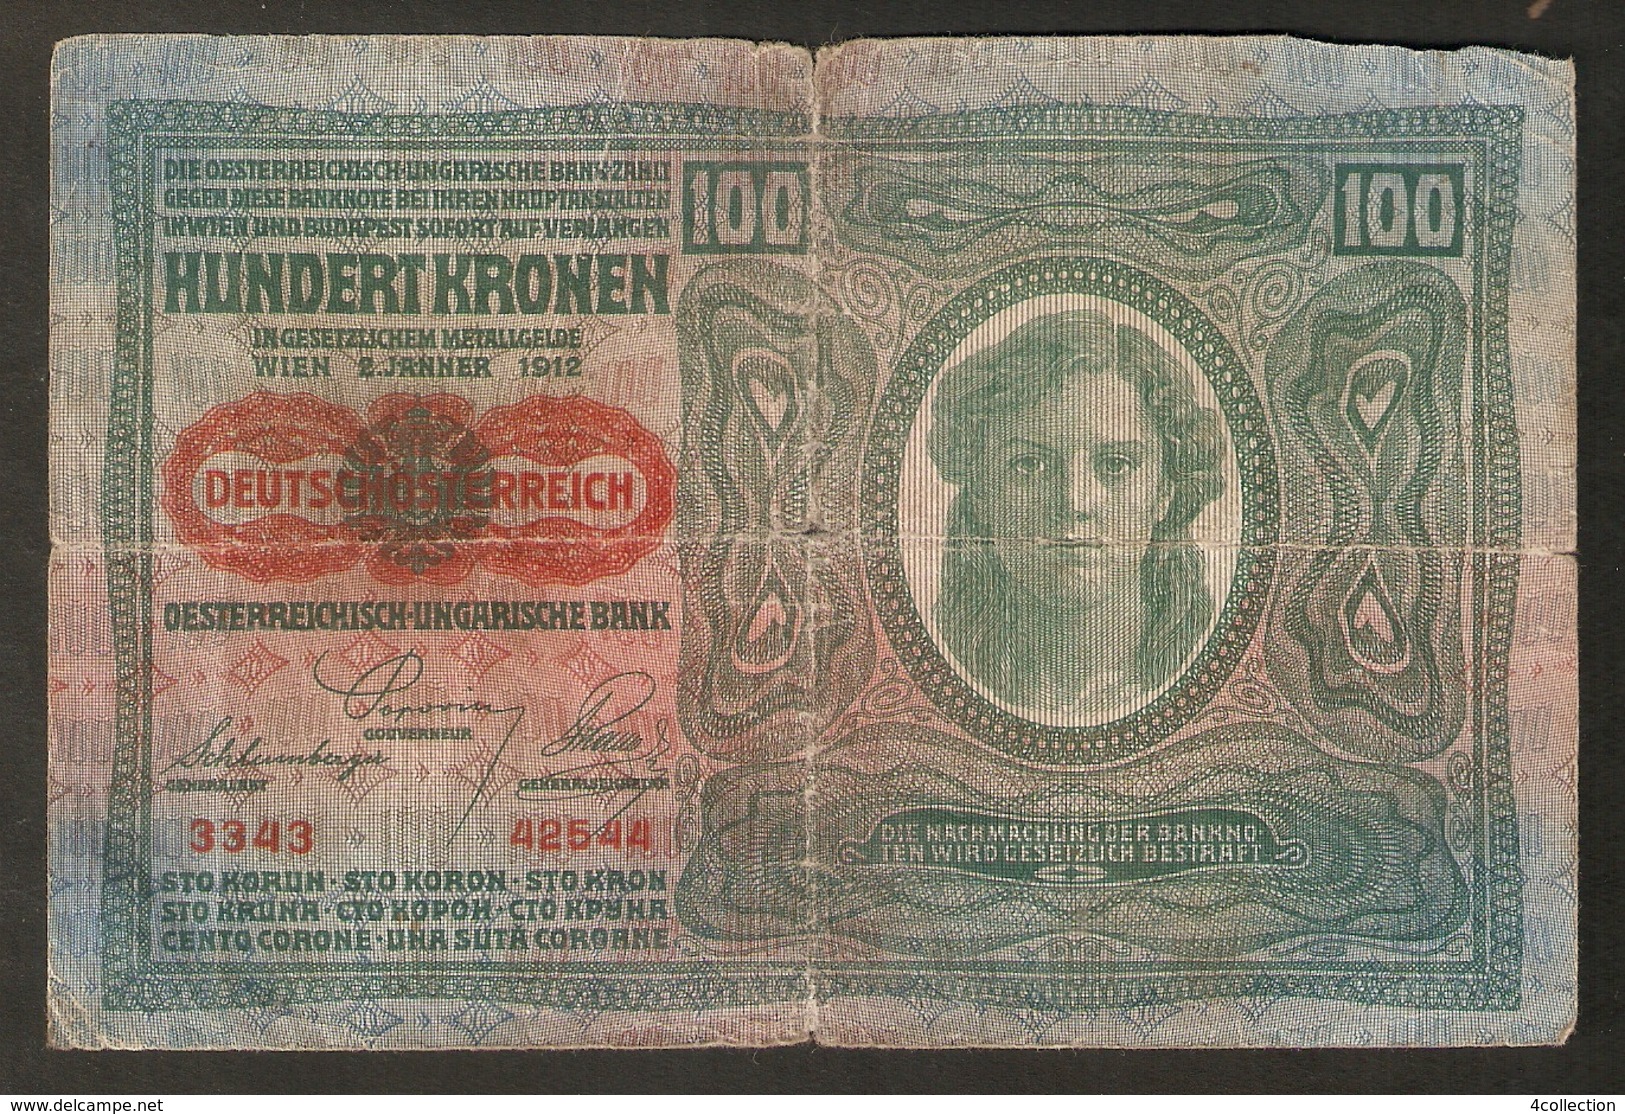 T. Austria Hungary 100 Kronen 1912 # 3343 / 42544 Osterreichisch Ungarische Bank Osterreich Banknote - Austria